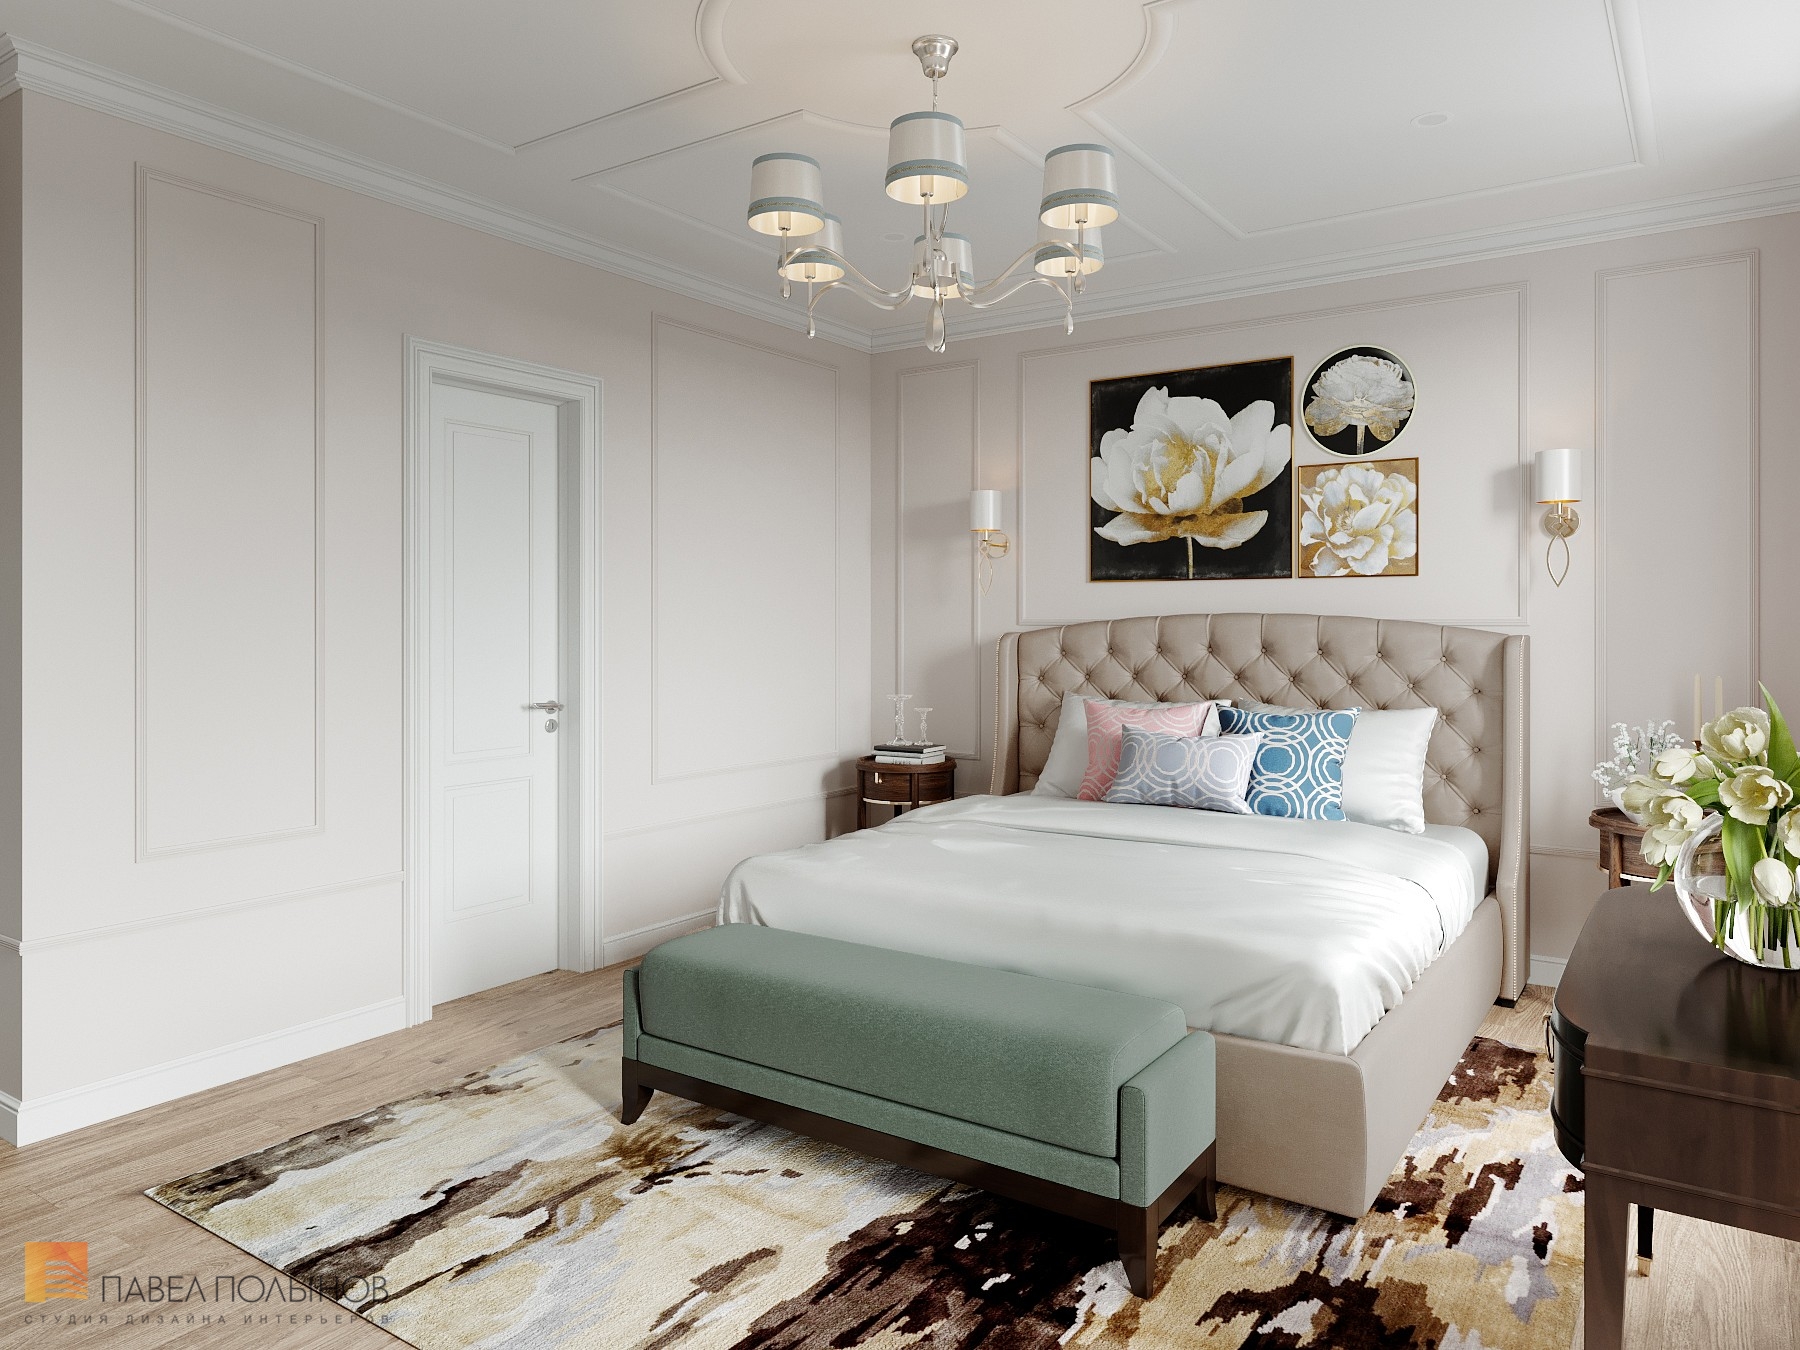 Фото дизайн спальни из проекта «Интерьер квартиры 140 кв.м. в стиле неоклассики»